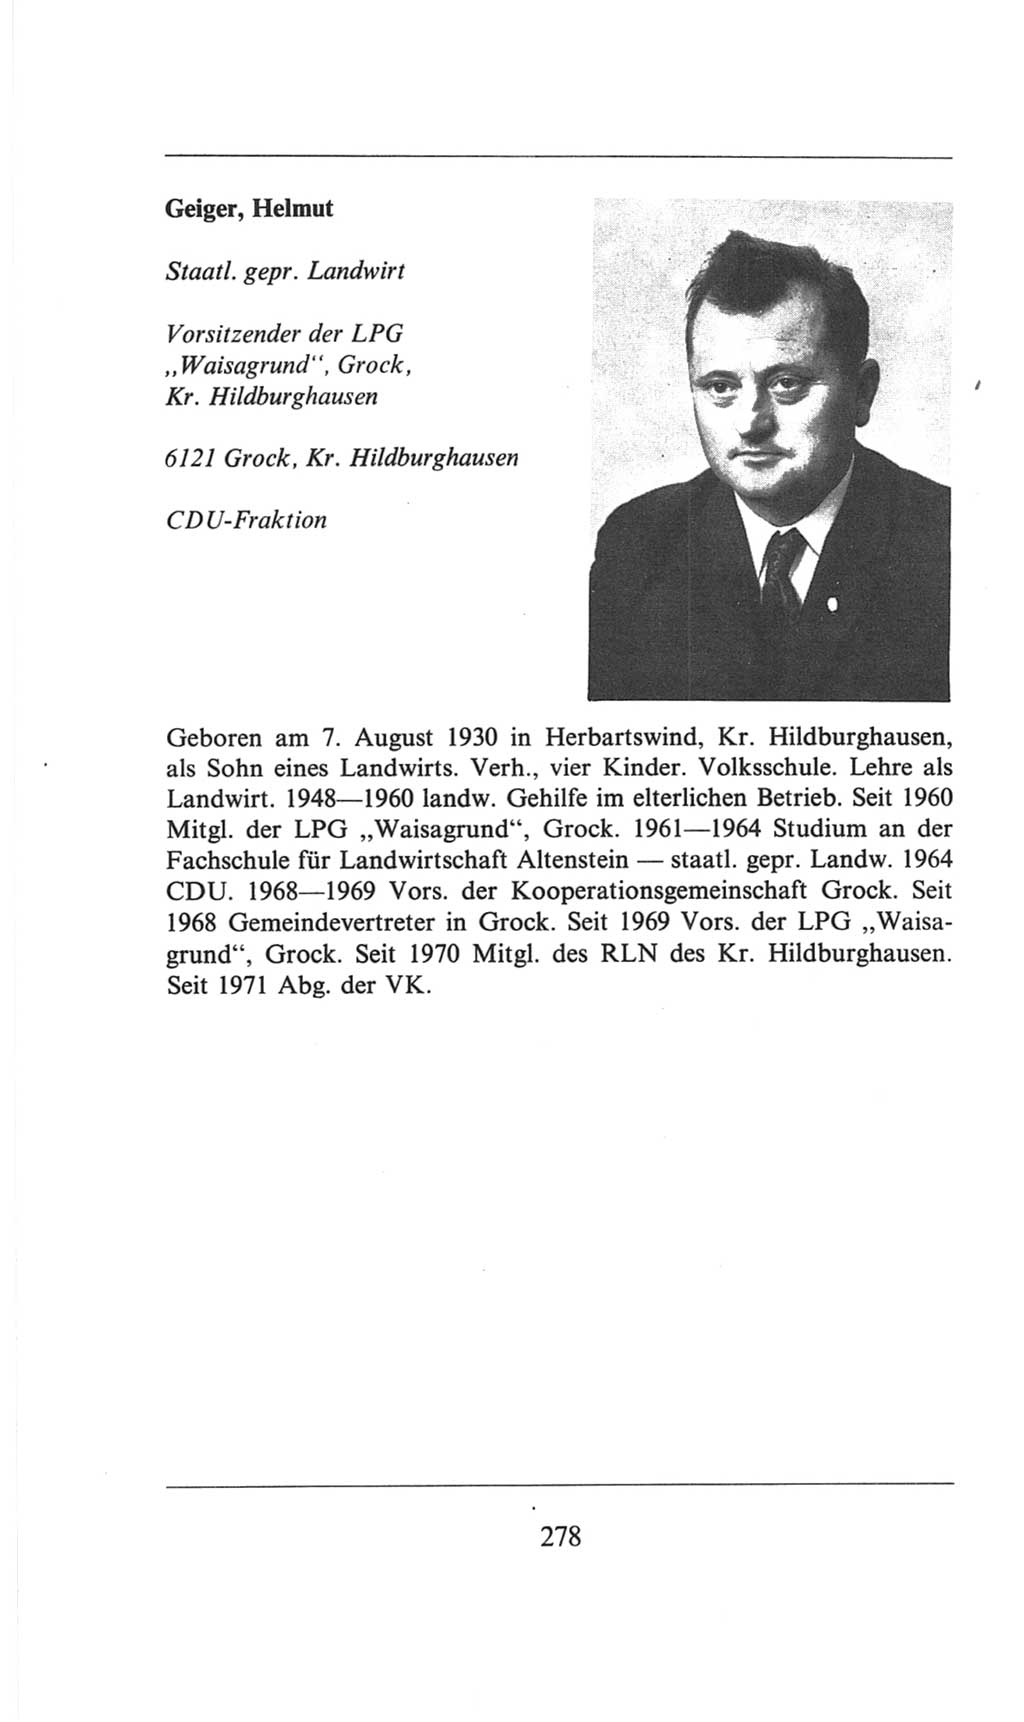 Volkskammer (VK) der Deutschen Demokratischen Republik (DDR), 6. Wahlperiode 1971-1976, Seite 278 (VK. DDR 6. WP. 1971-1976, S. 278)